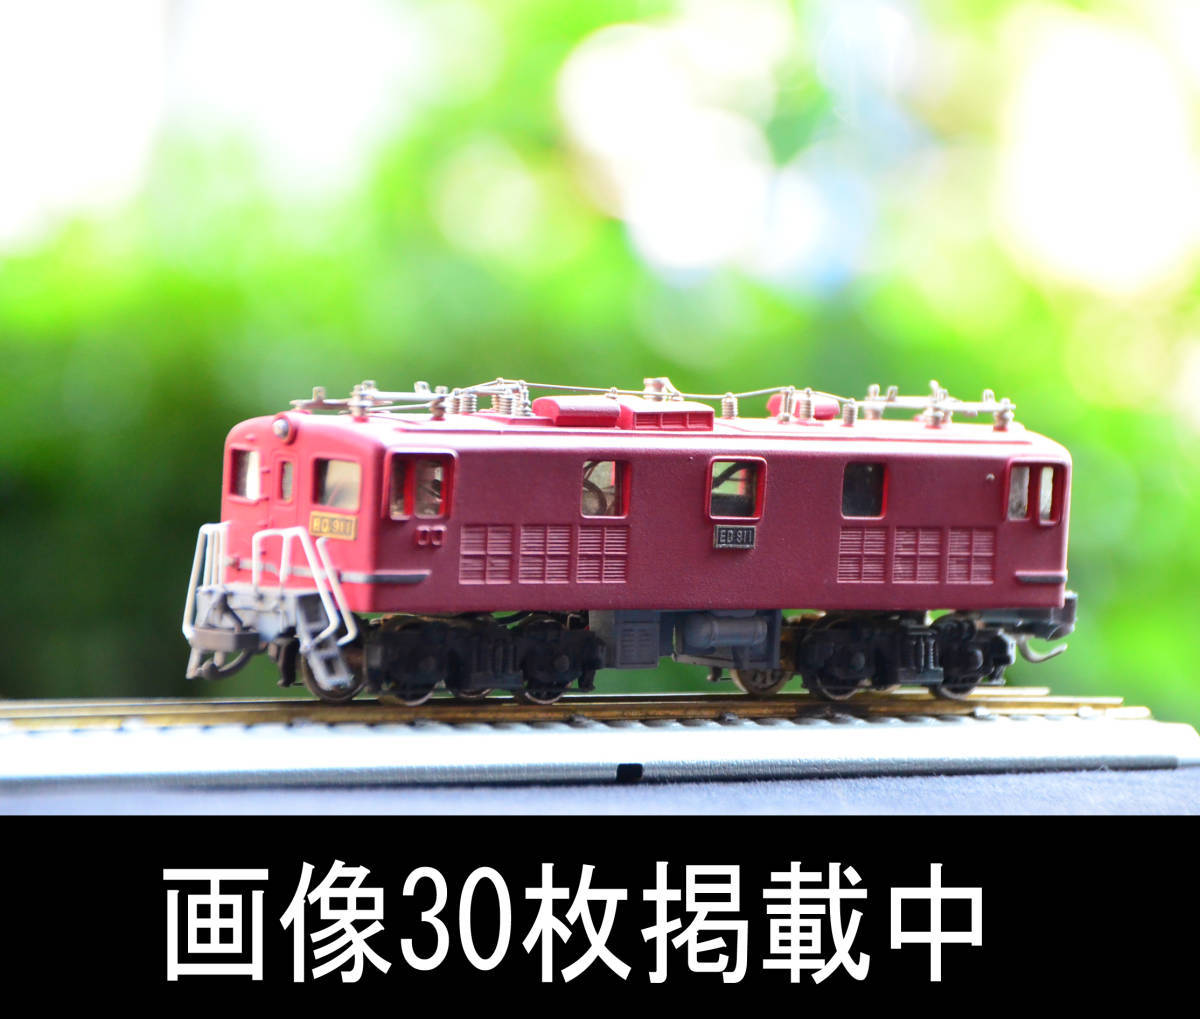 HOゲージ ED91 1 カワイモデル 旧型 電気機関車 国鉄 鉄道模型 ヴィンテージ 画像30枚掲載中